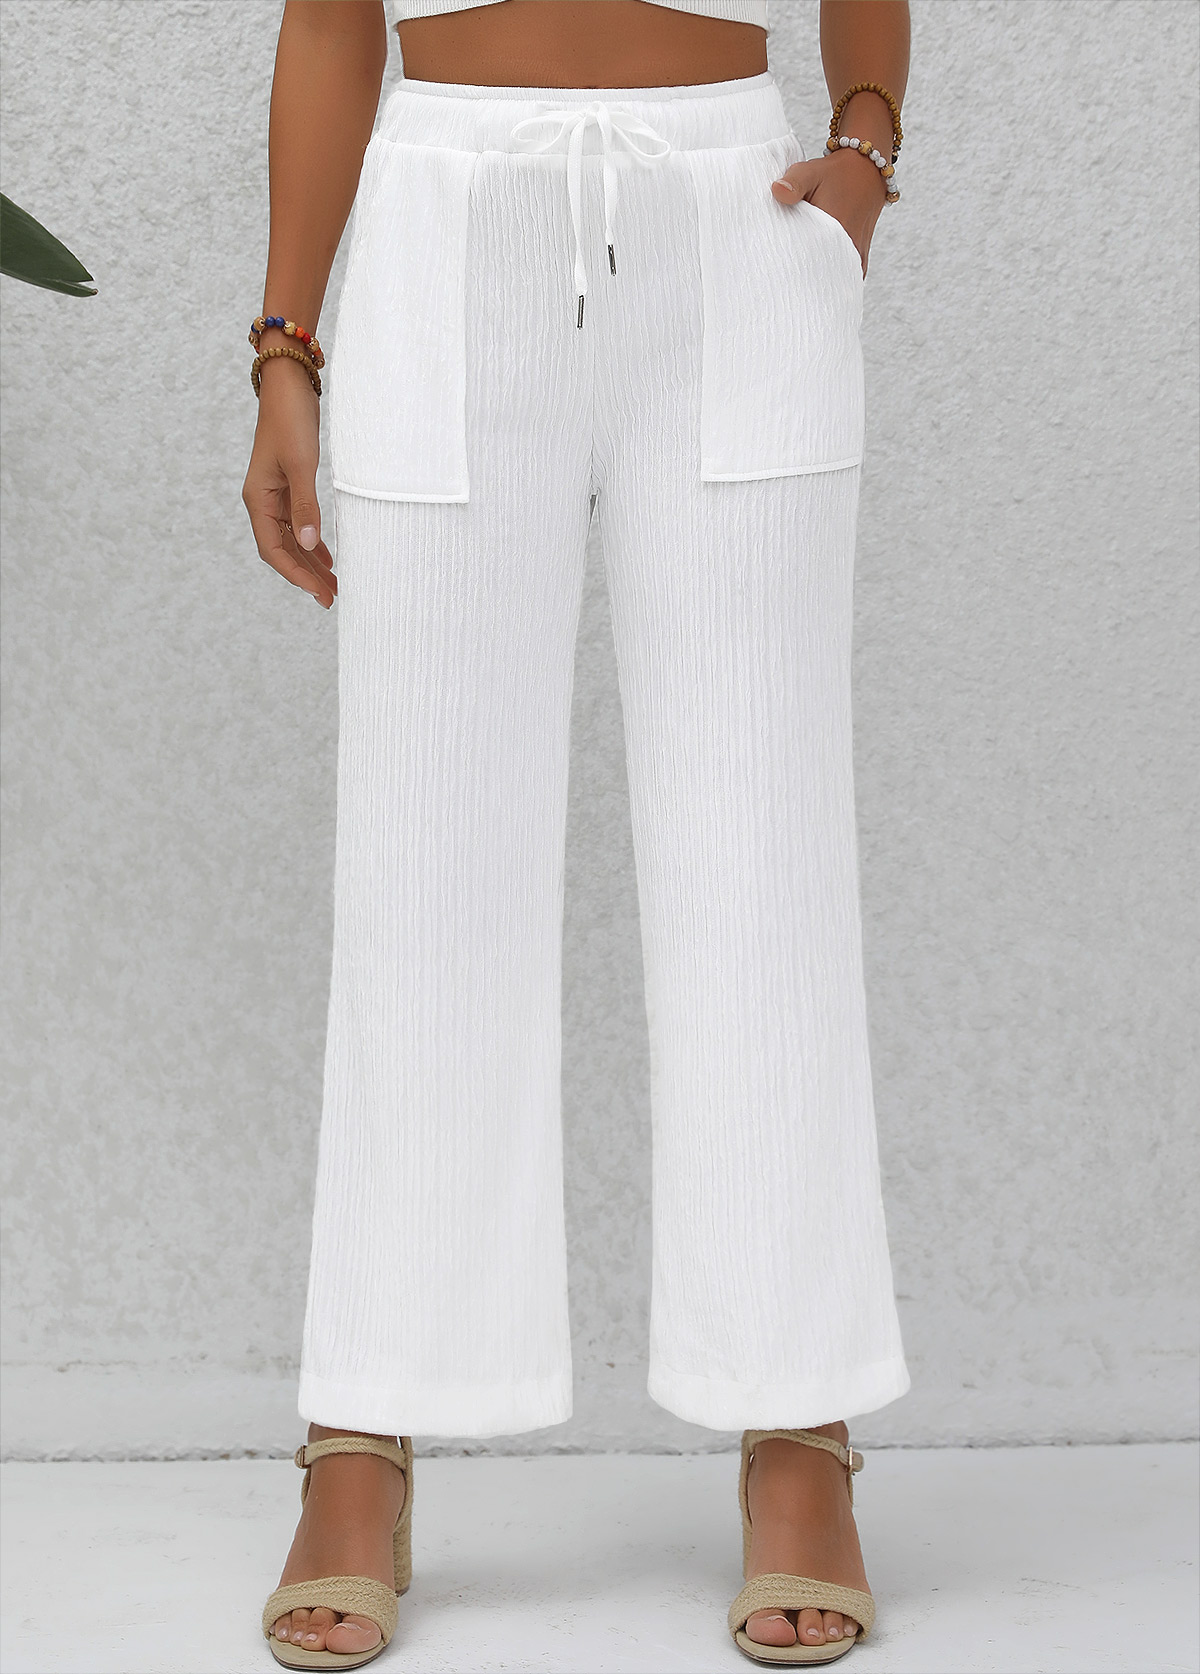 Pantalon taille haute blanc à double poches latérales taille élastique